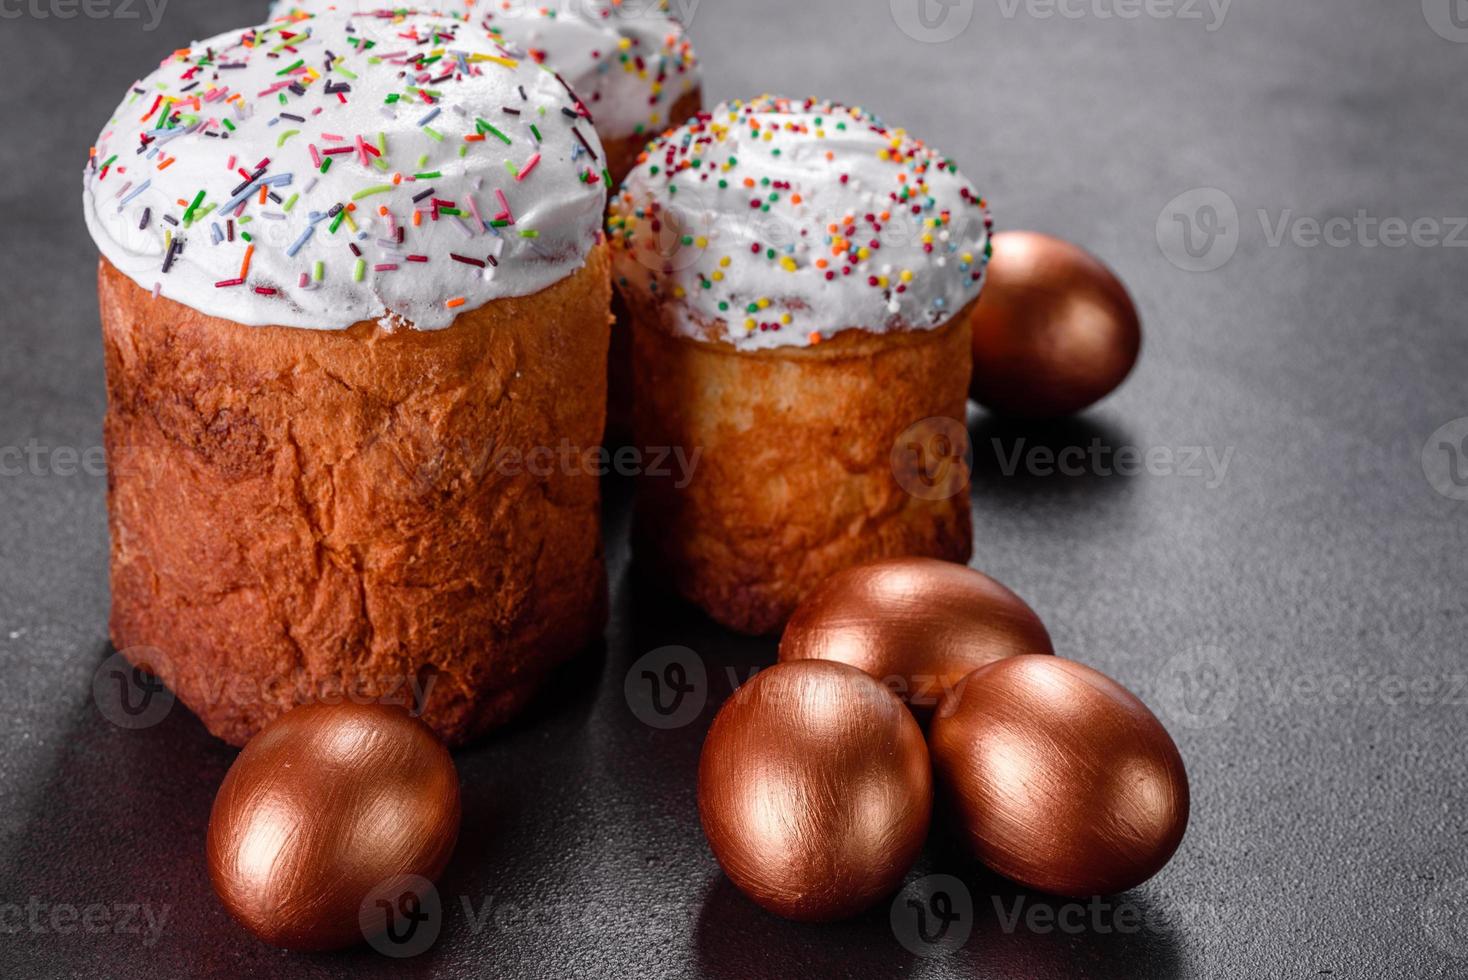 Huevos de pascua de oro y bronce y pastel de pascua sobre un fondo oscuro foto